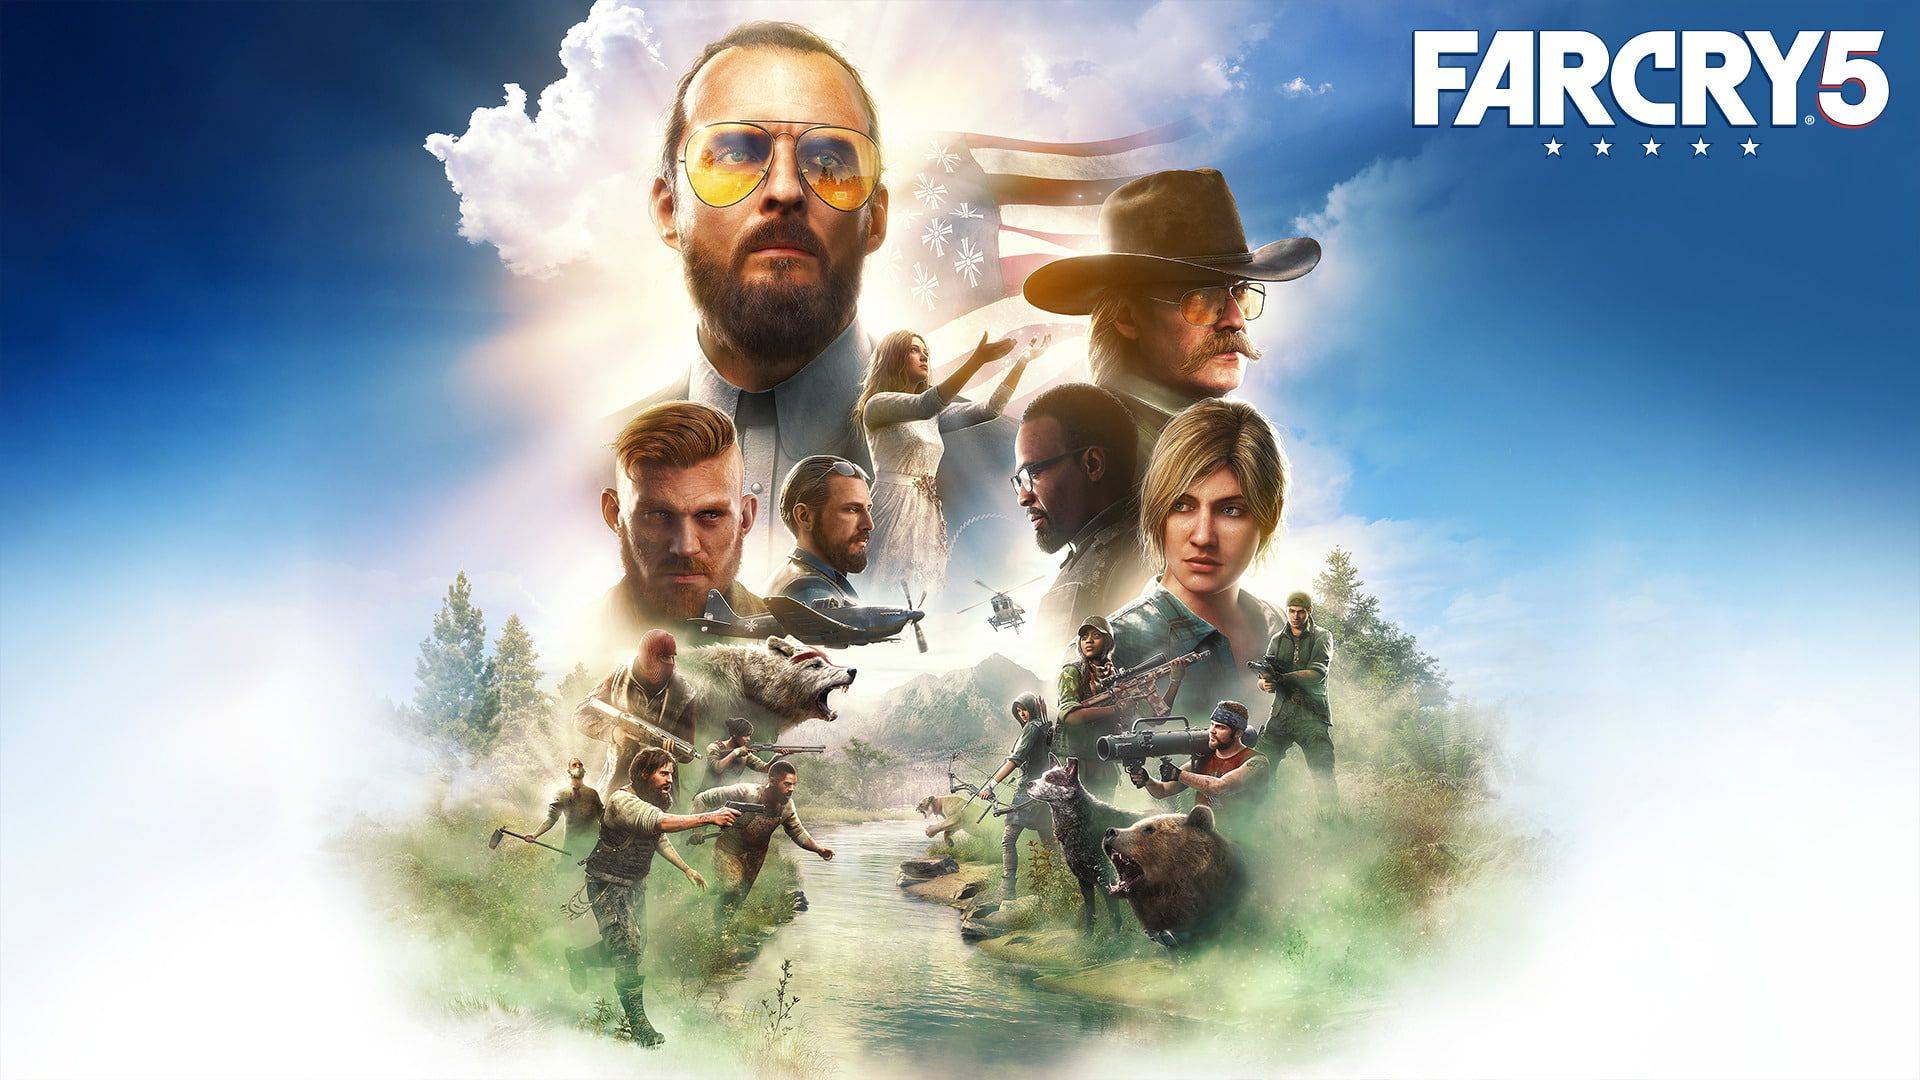 Far cry 5. Прохождение и общение!